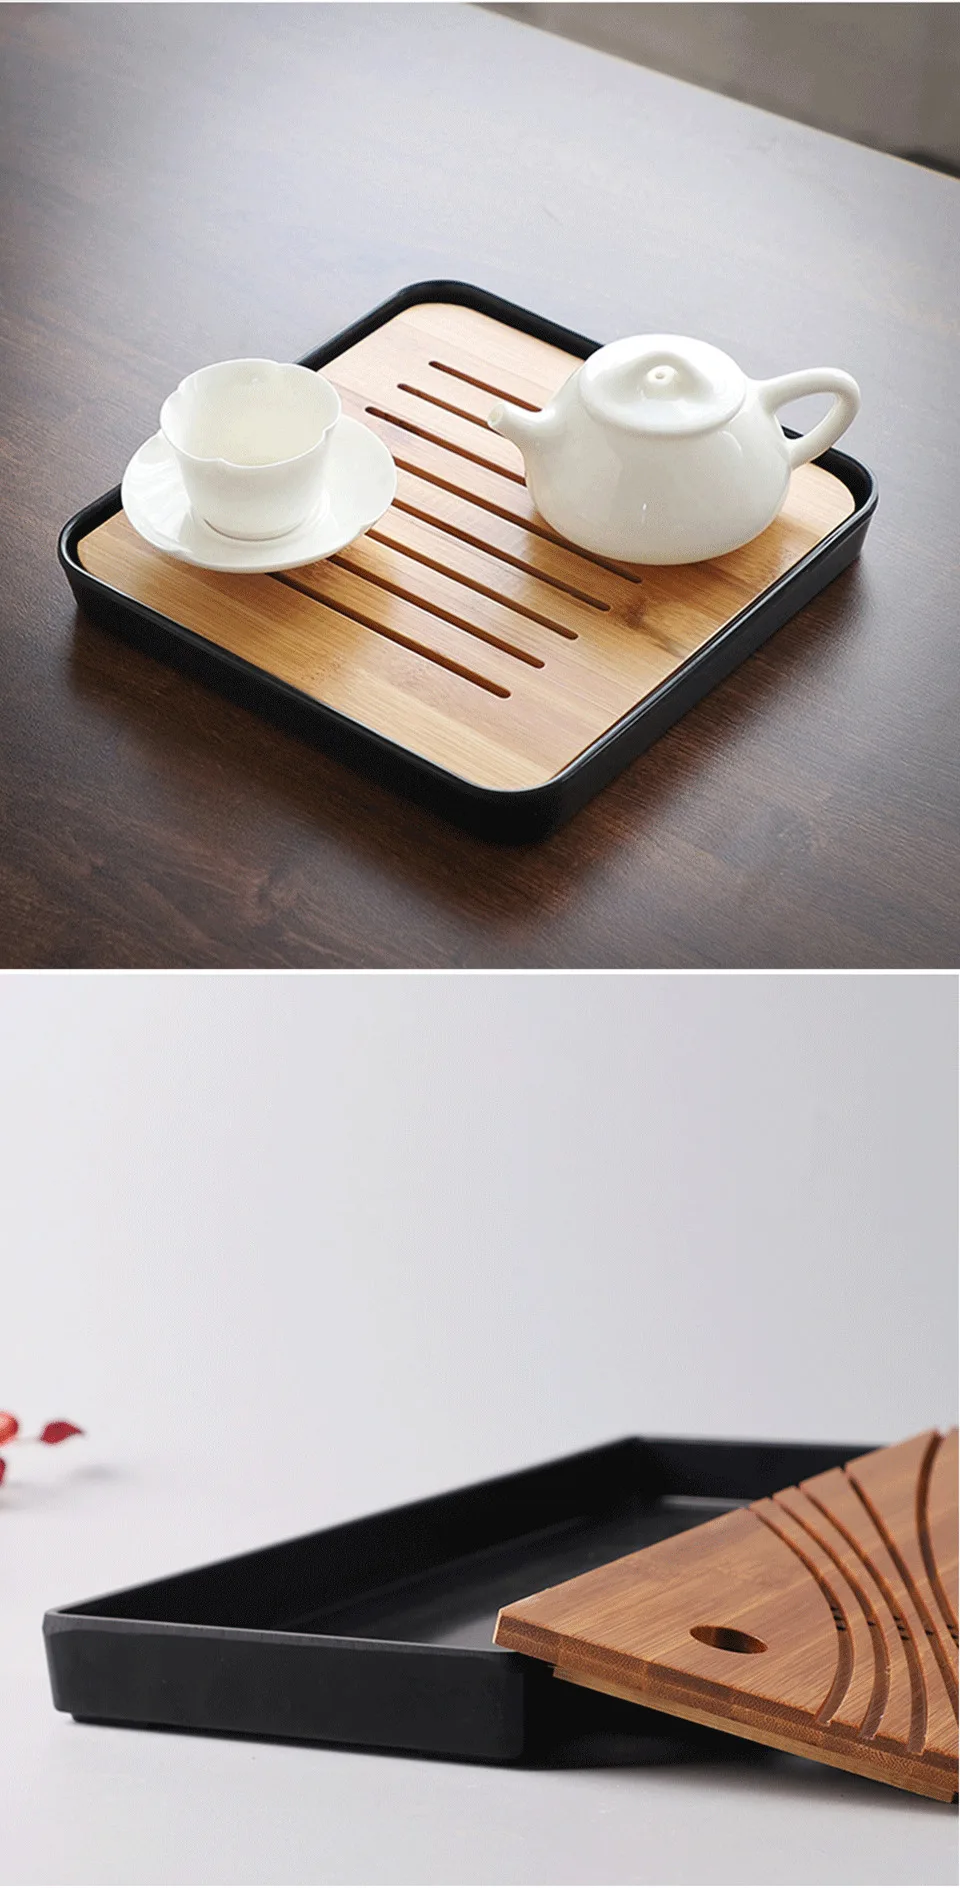 CAKEHOUD бамбуковый чайный поднос дренаж воды хранения чайный набор кунг-фу чайный стол китайские чайные чашки церемония инструменты чайная церемония чайный сервиз